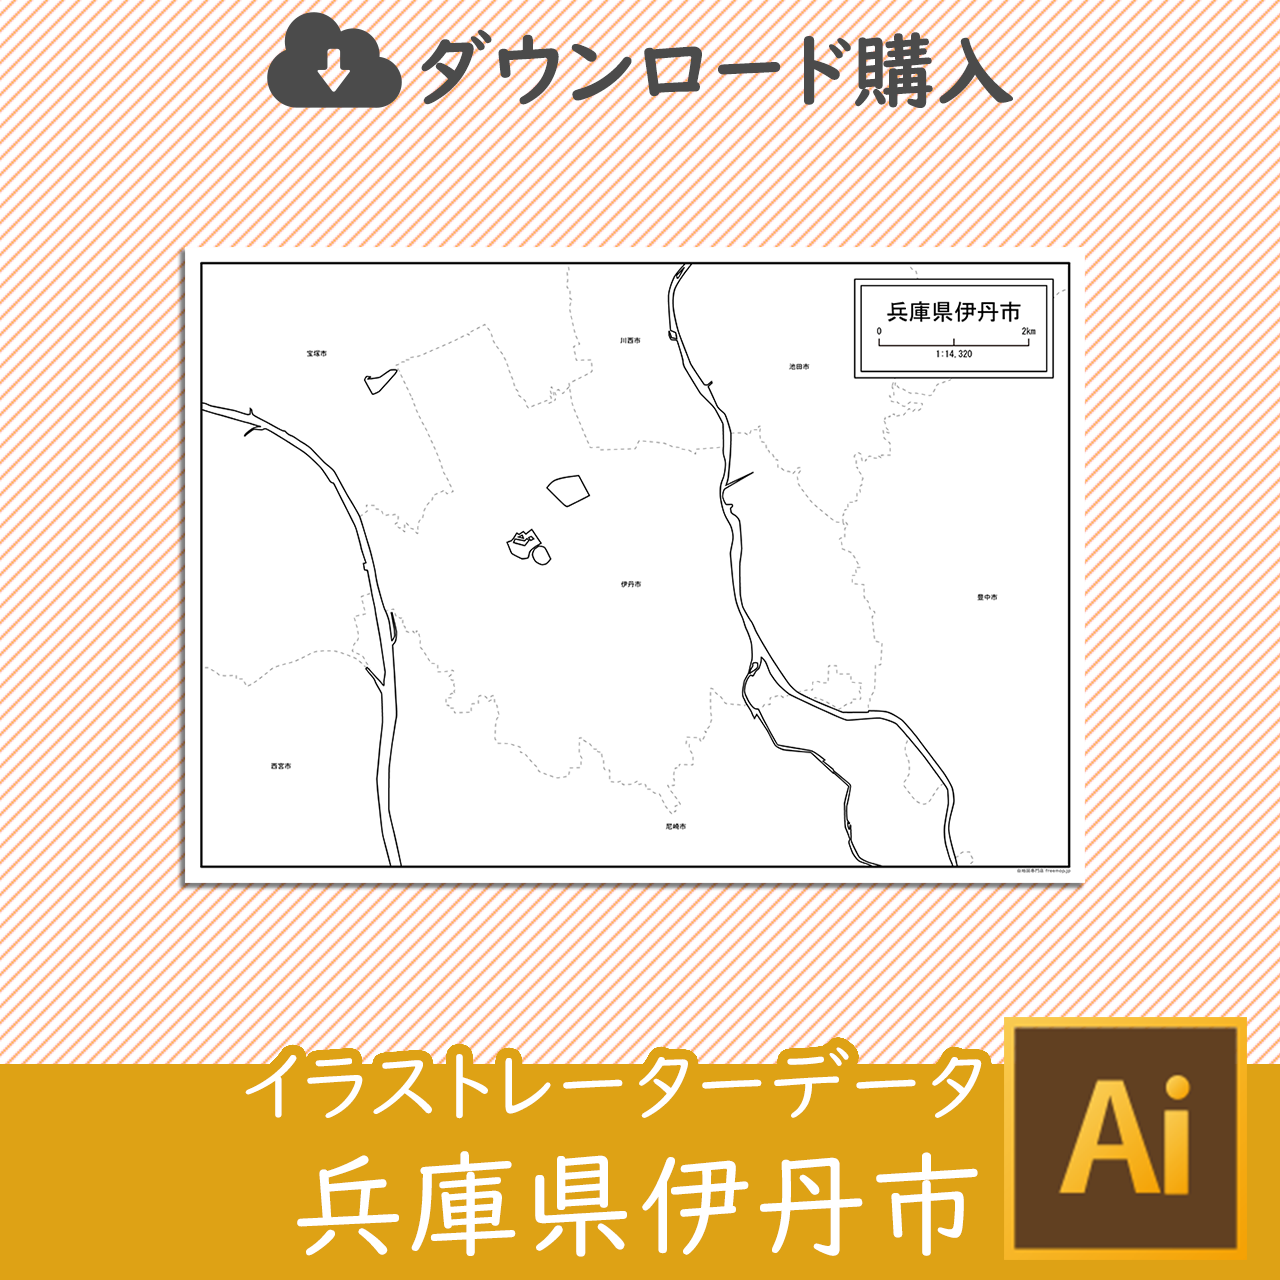 伊丹市のaiデータのサムネイル画像